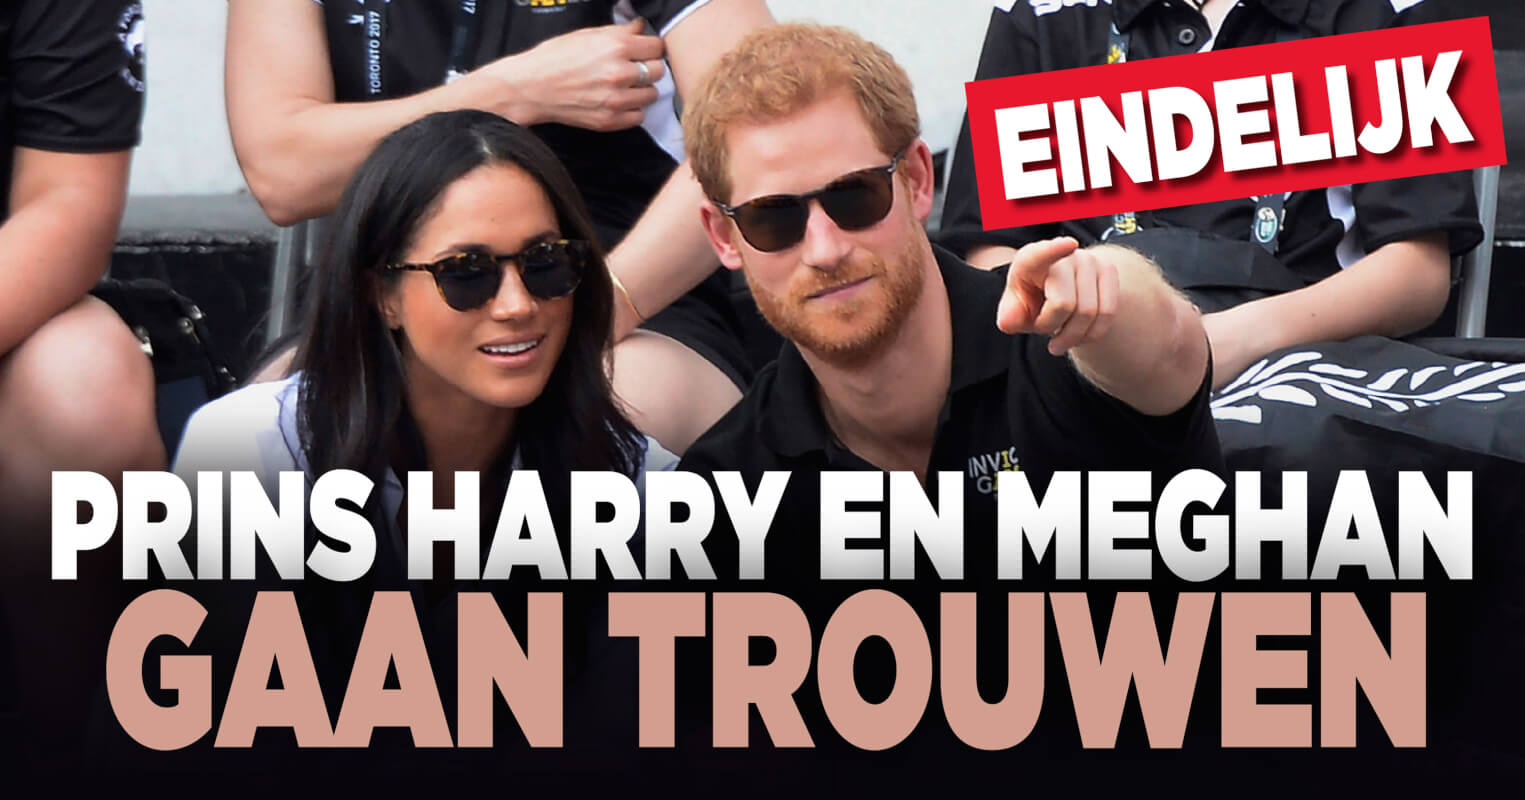 Prins Harry en Meghan officieel verloofd!